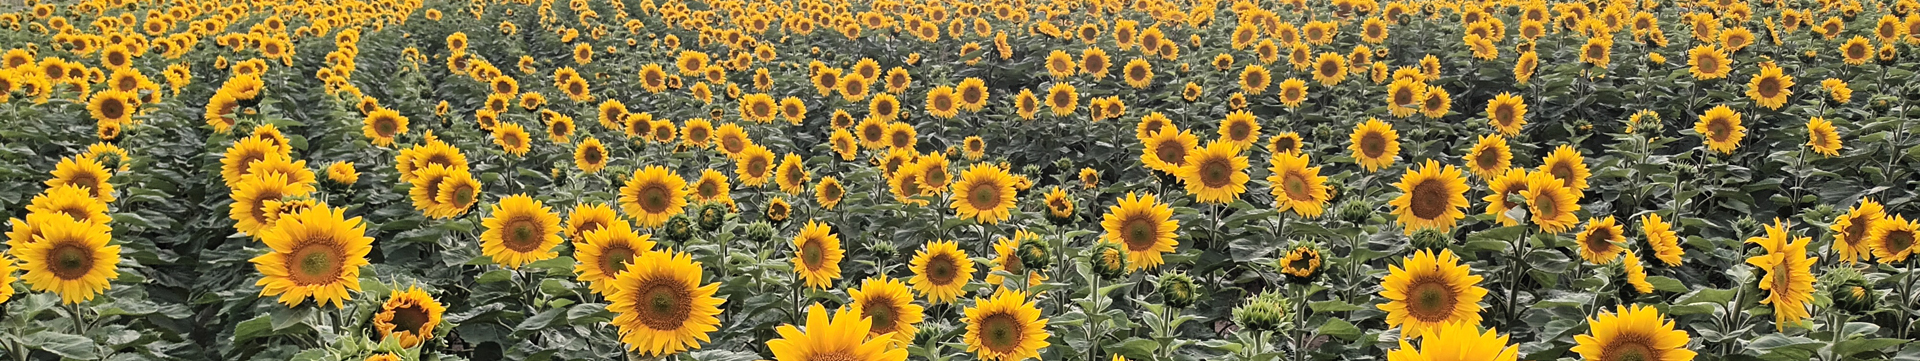 Sonnenblumen bei Hohenstein